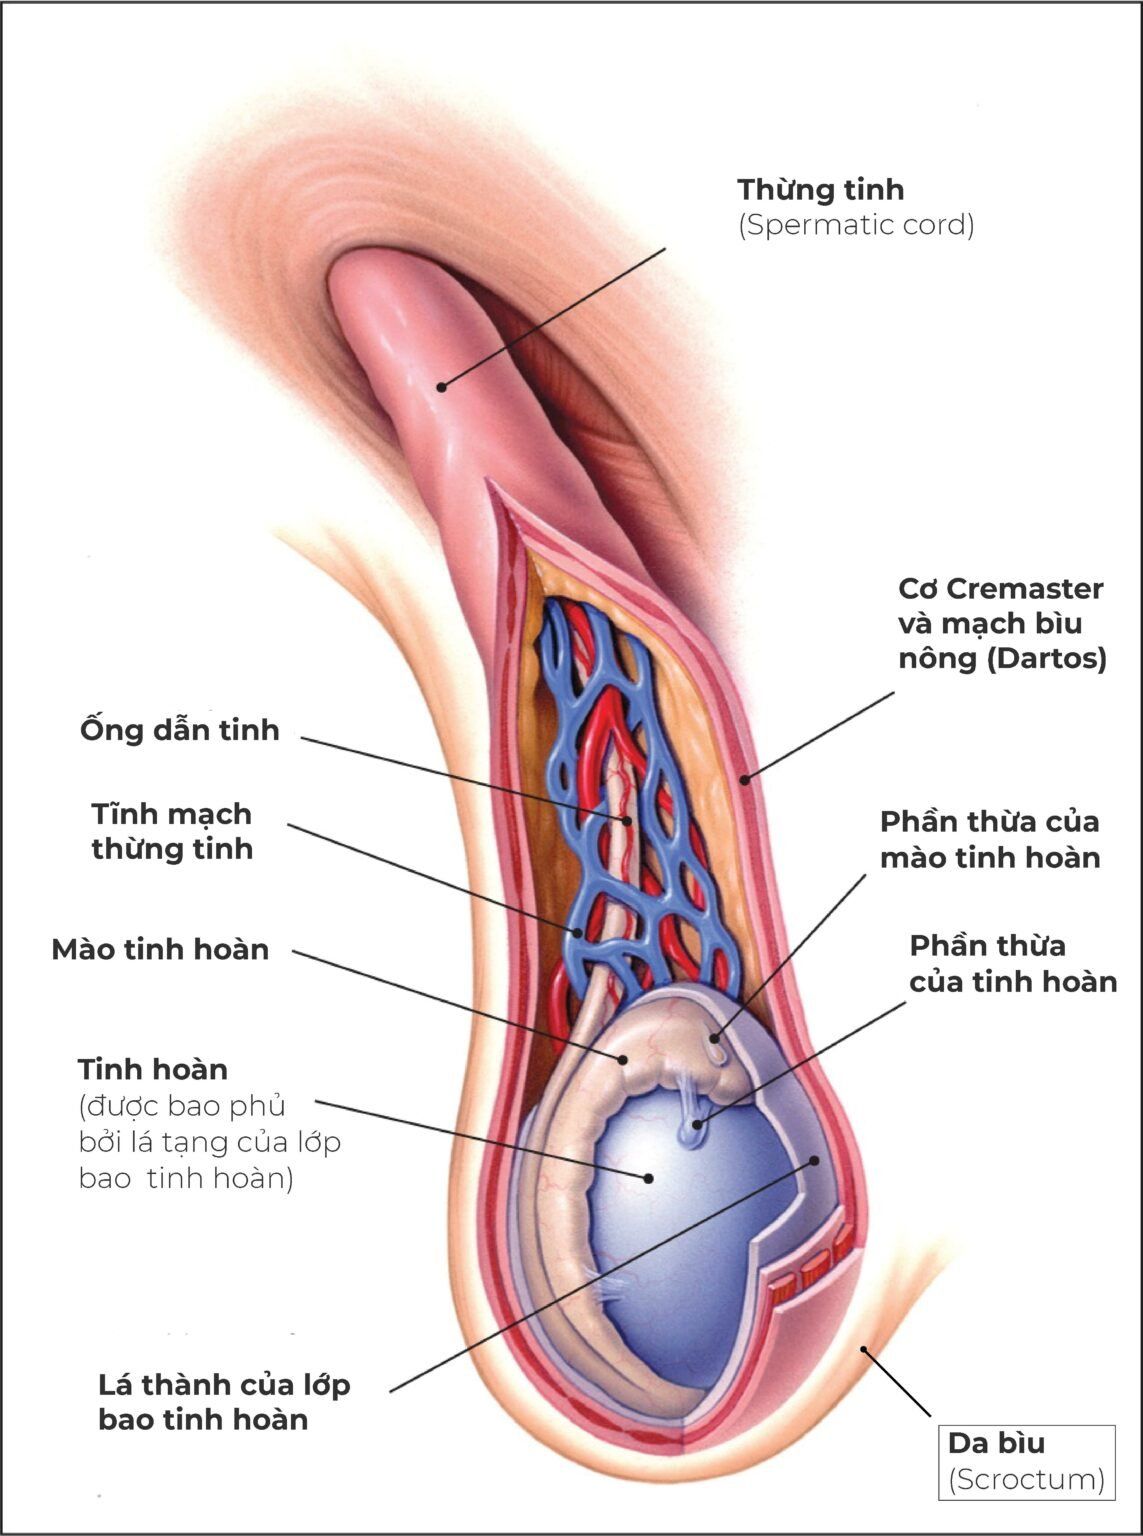 Hình ảnh 3D giải phẫu chi tiết thừng tinh bên trong cấu tạo bộ phận sinh dục nam giới